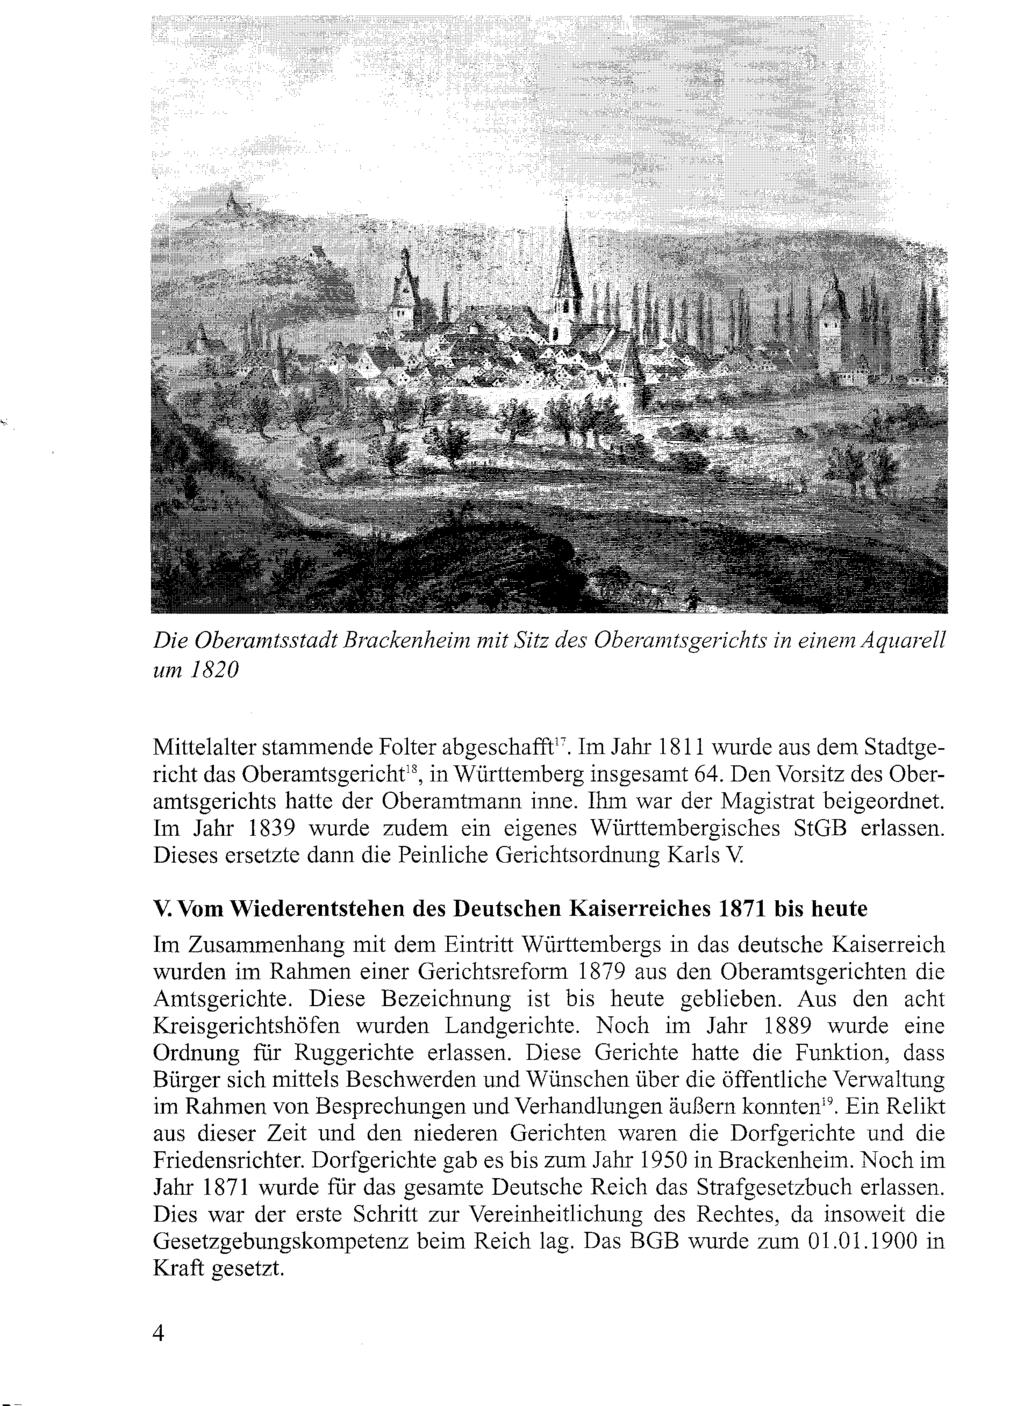 Die Oberamtsstadt Brackenheim mit Sitz des Oberamtsgerichts um 1820 in einem Aquarell Mittelalter stammende Folter abgeschafft!!. Im Jahr 1811 wurde aus dem Stadtgericht das Oberamtsgericht!